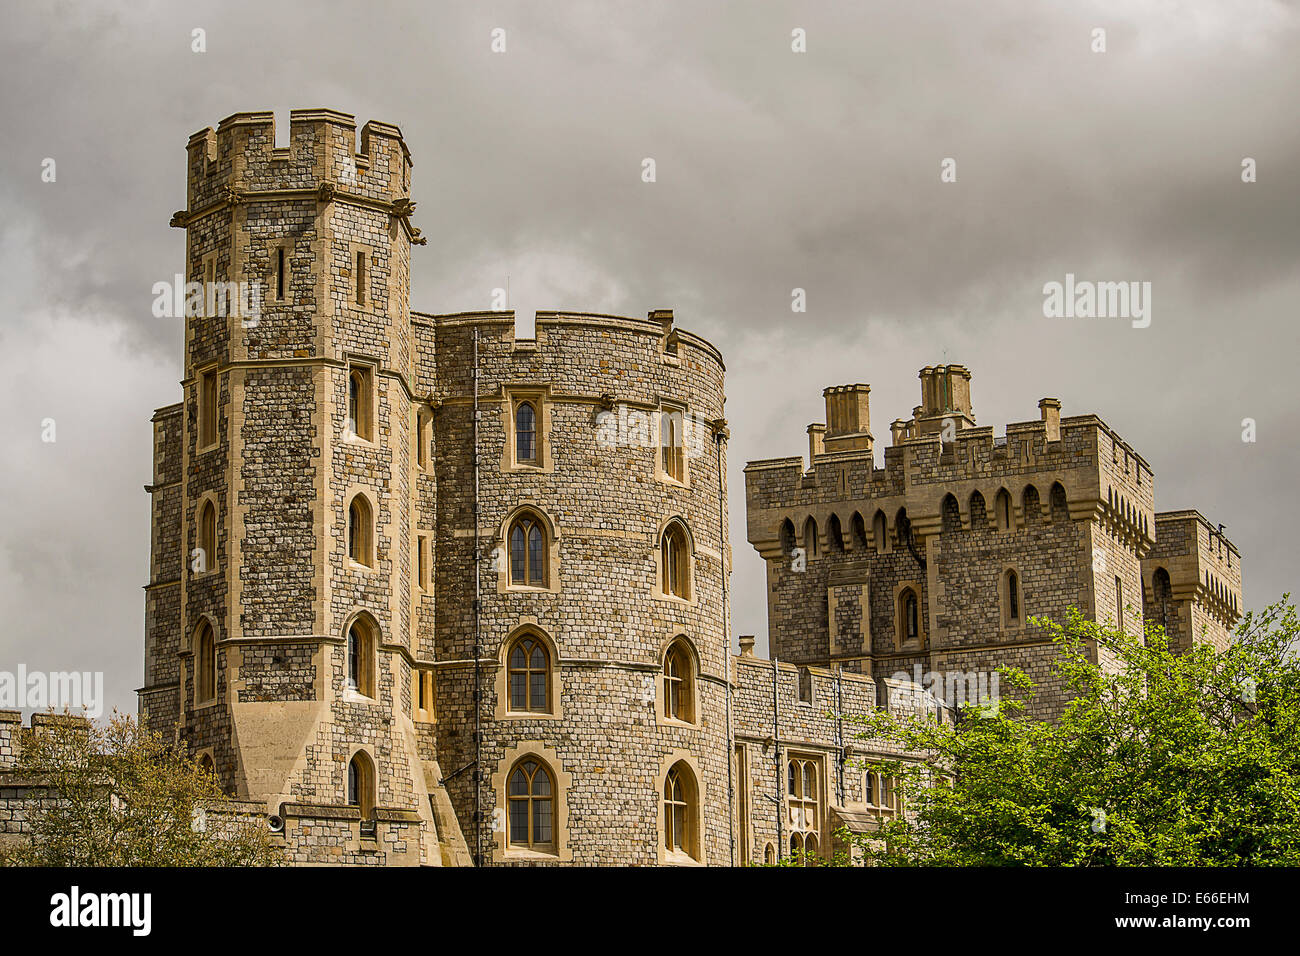 Immagine del bellissimo castello di Windsor in Inghilterra. Foto Stock